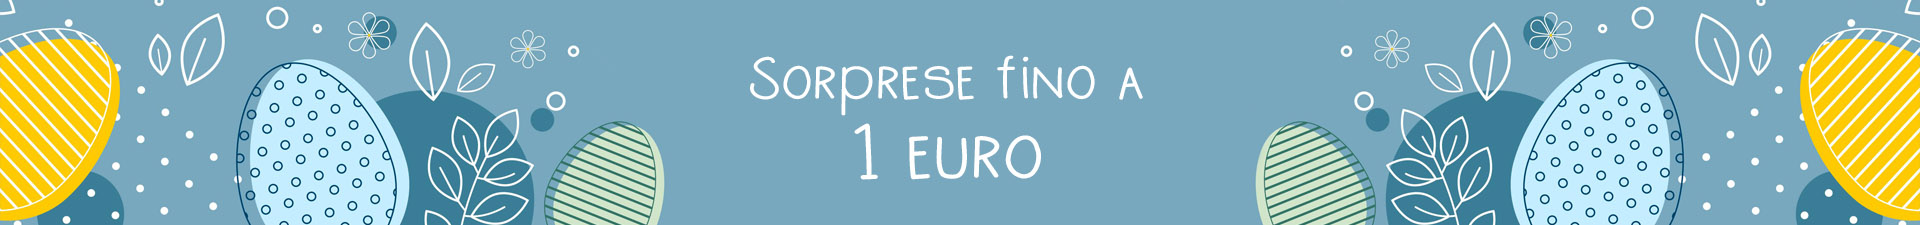 Sorpresas hasta 1 euro